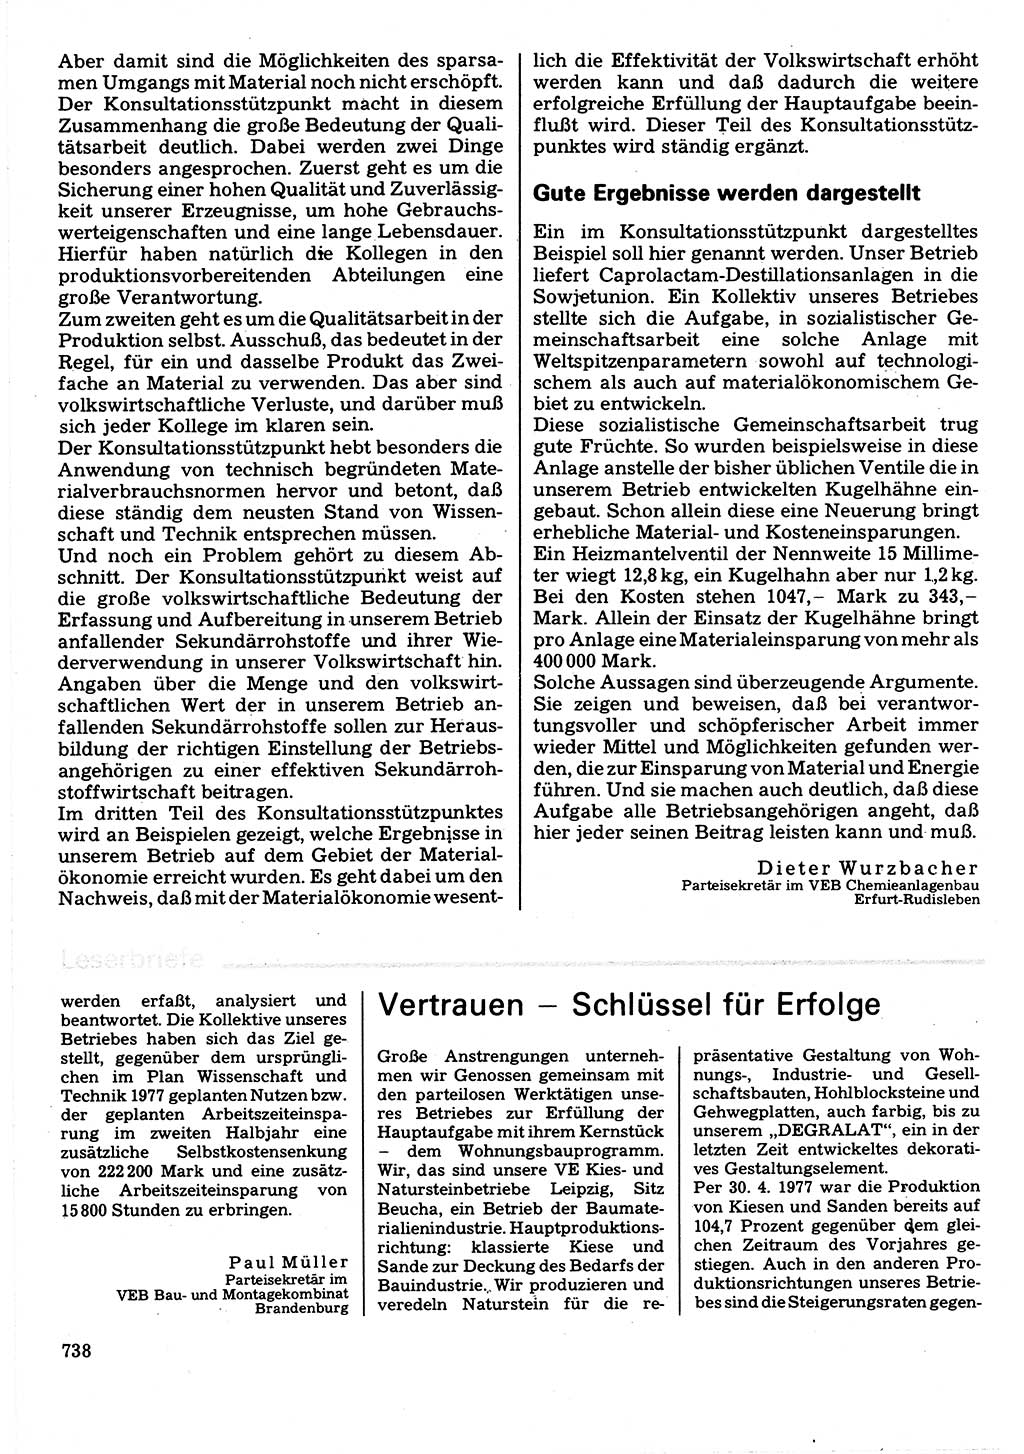 Neuer Weg (NW), Organ des Zentralkomitees (ZK) der SED (Sozialistische Einheitspartei Deutschlands) für Fragen des Parteilebens, 32. Jahrgang [Deutsche Demokratische Republik (DDR)] 1977, Seite 738 (NW ZK SED DDR 1977, S. 738)